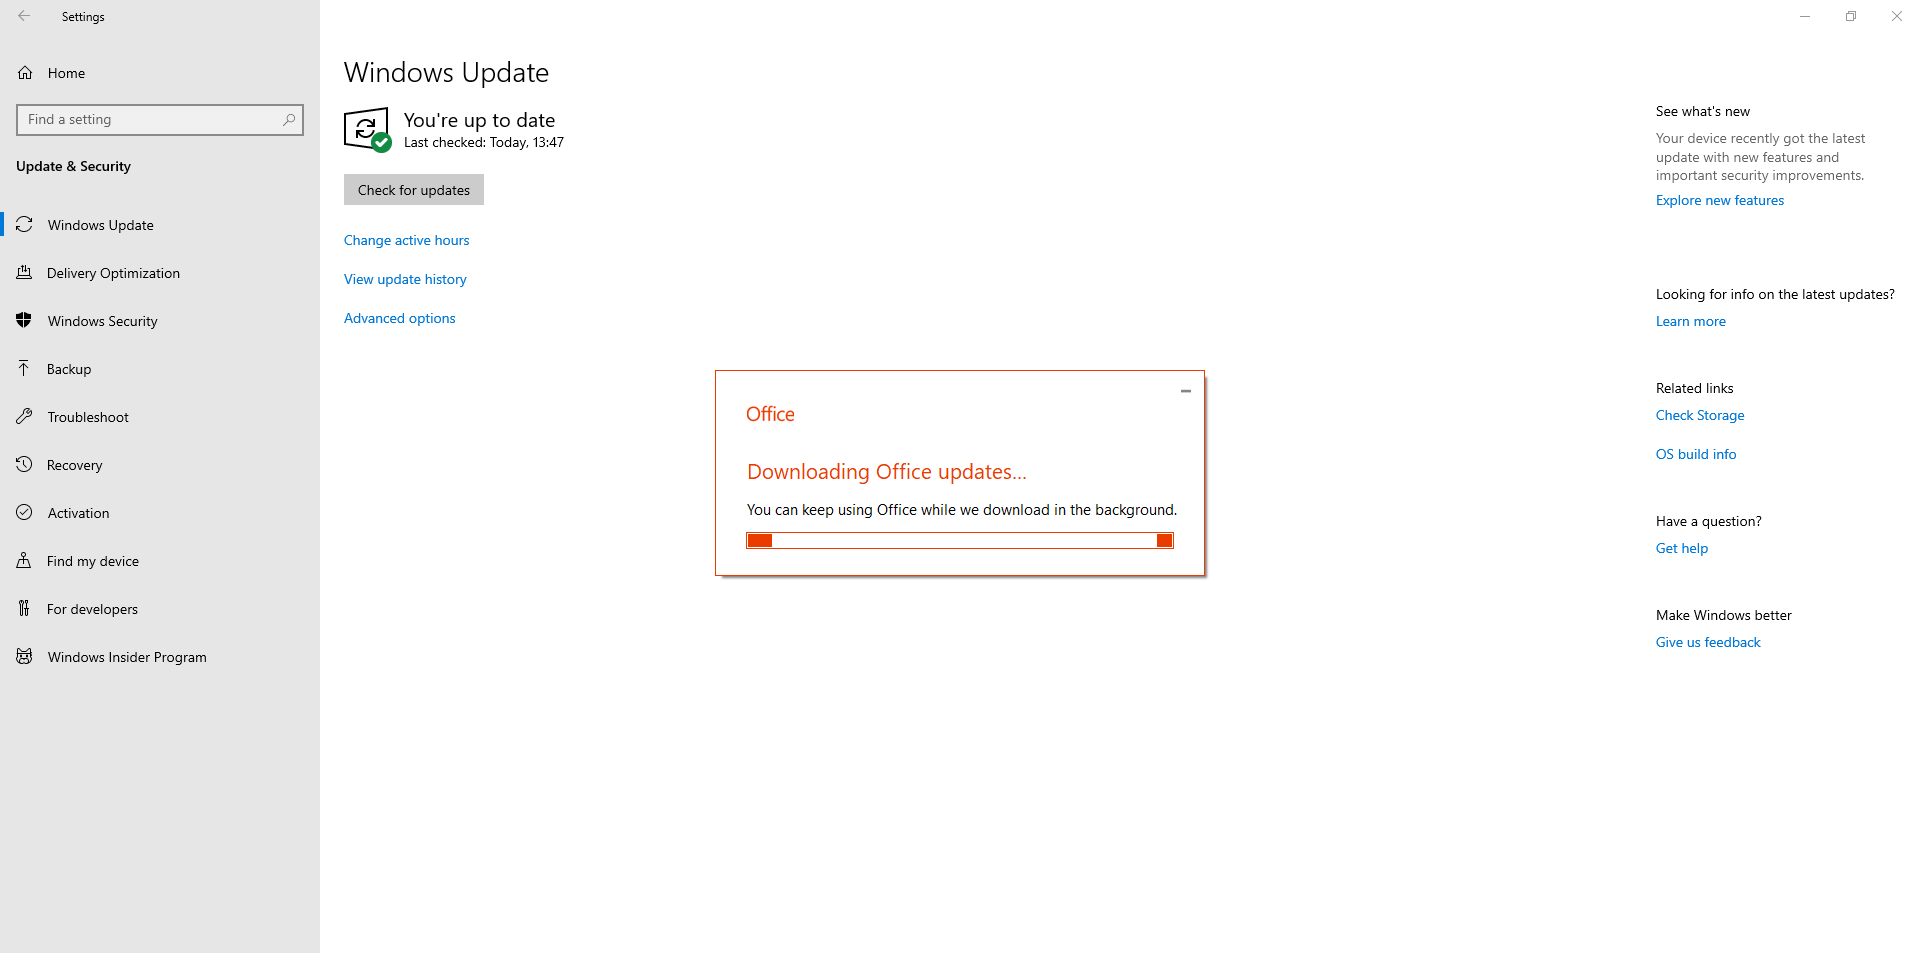 Office 365 updates not shown in Windows Update 318642c8-cca9-4dd3-8059-2fbb6e5a6d42?upload=true.png